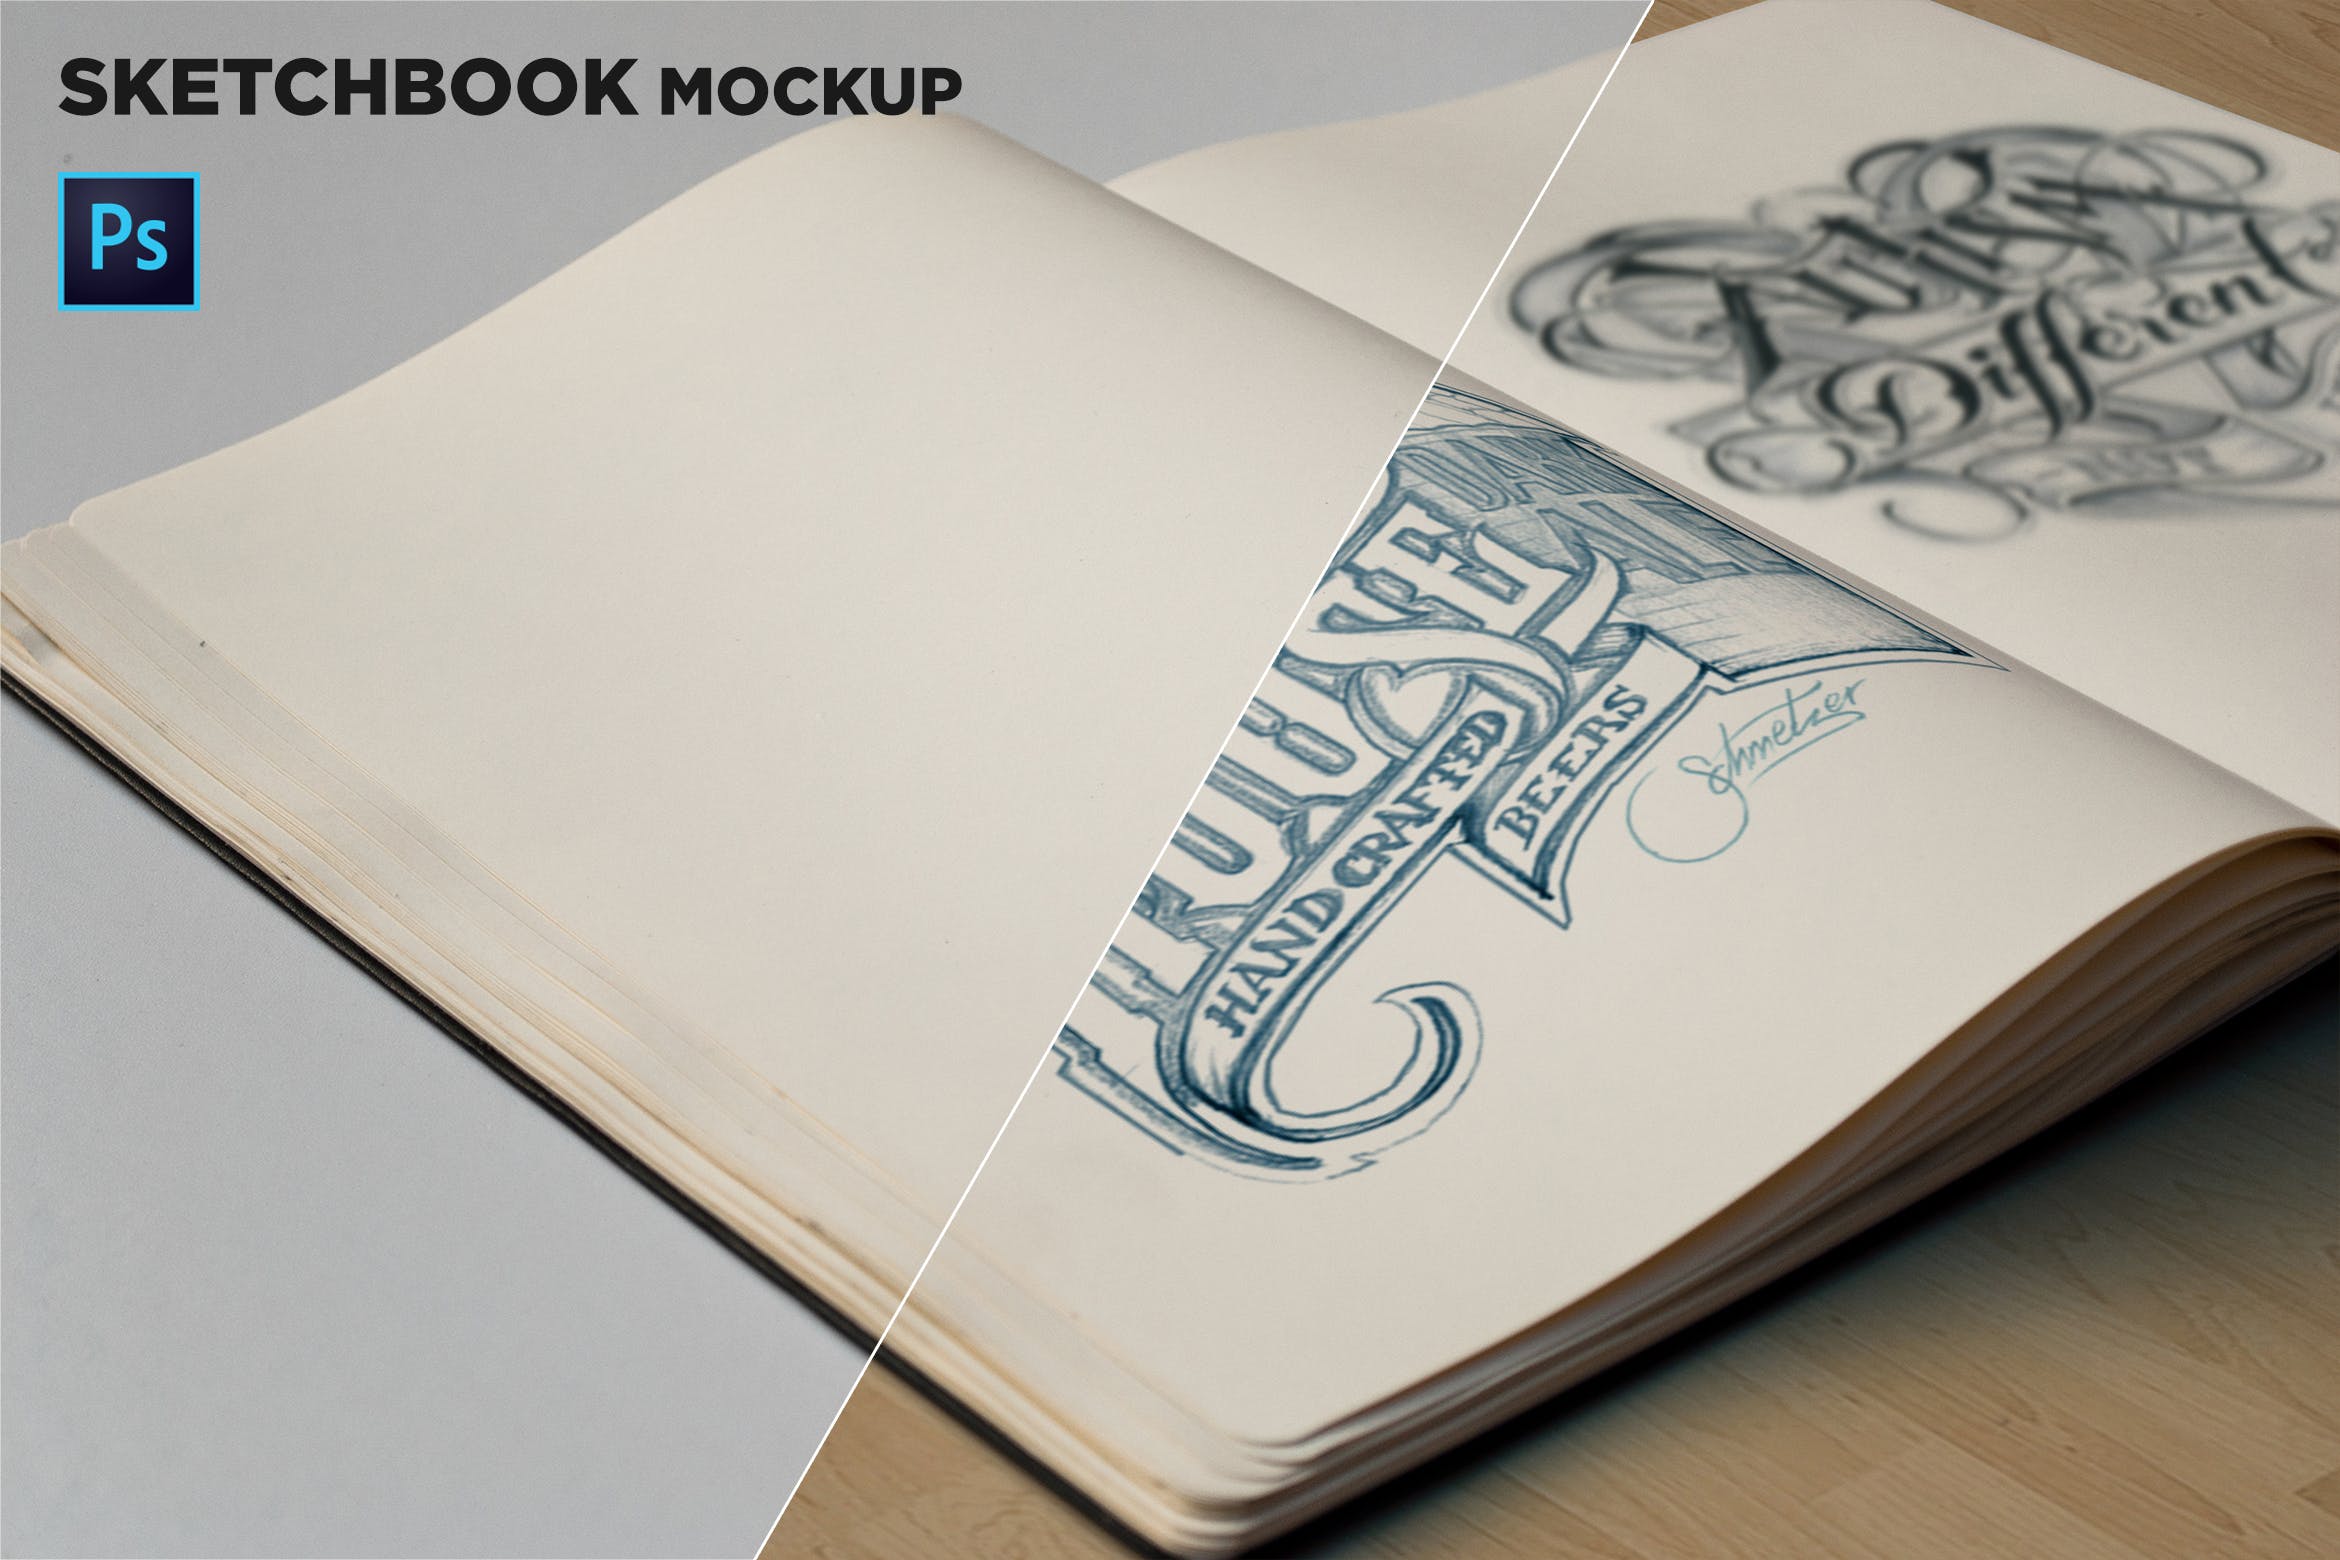 素描本内页设计/艺术作品展示特写镜头样机非凡图库精选 Sketchbook Mockup Closeup插图